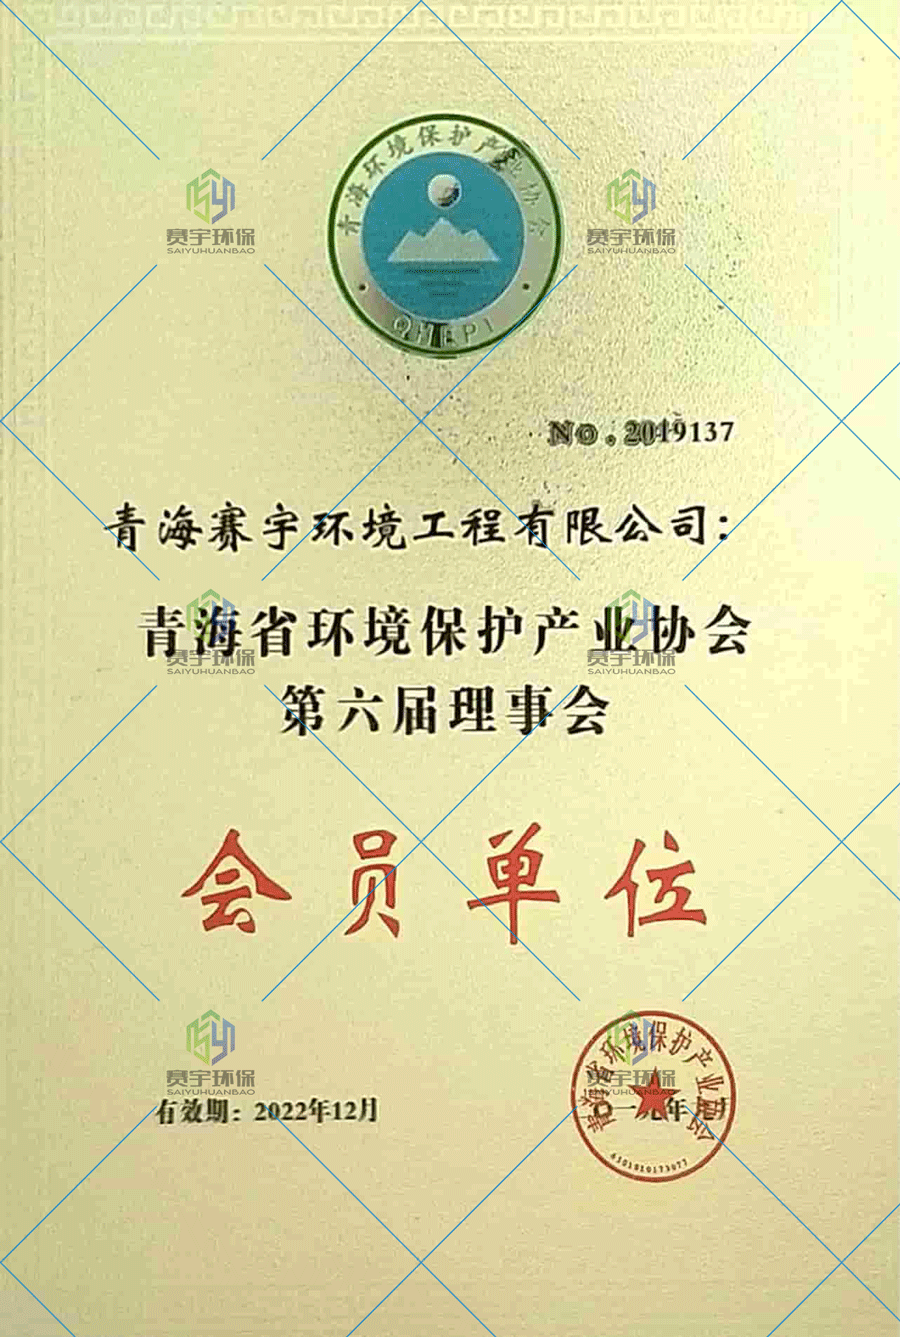 环保产业协会证书.png